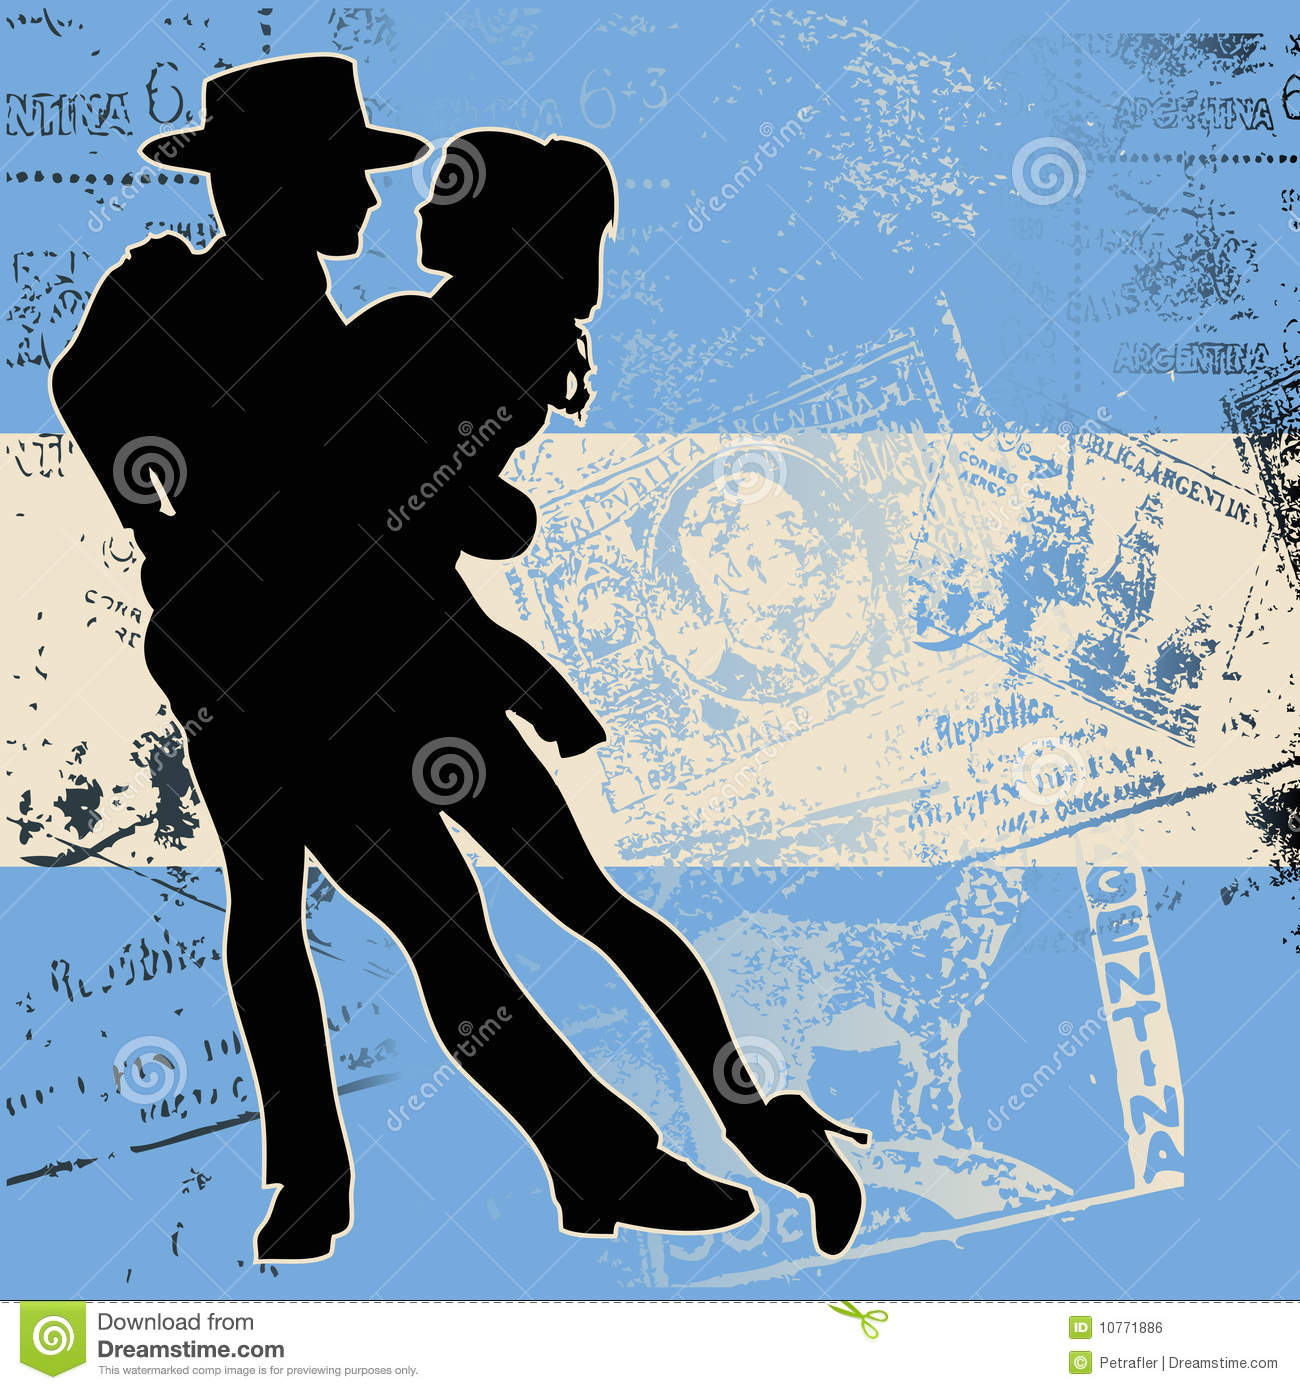 Argentine Tango Royalty Free Stock Image   Image  10771886